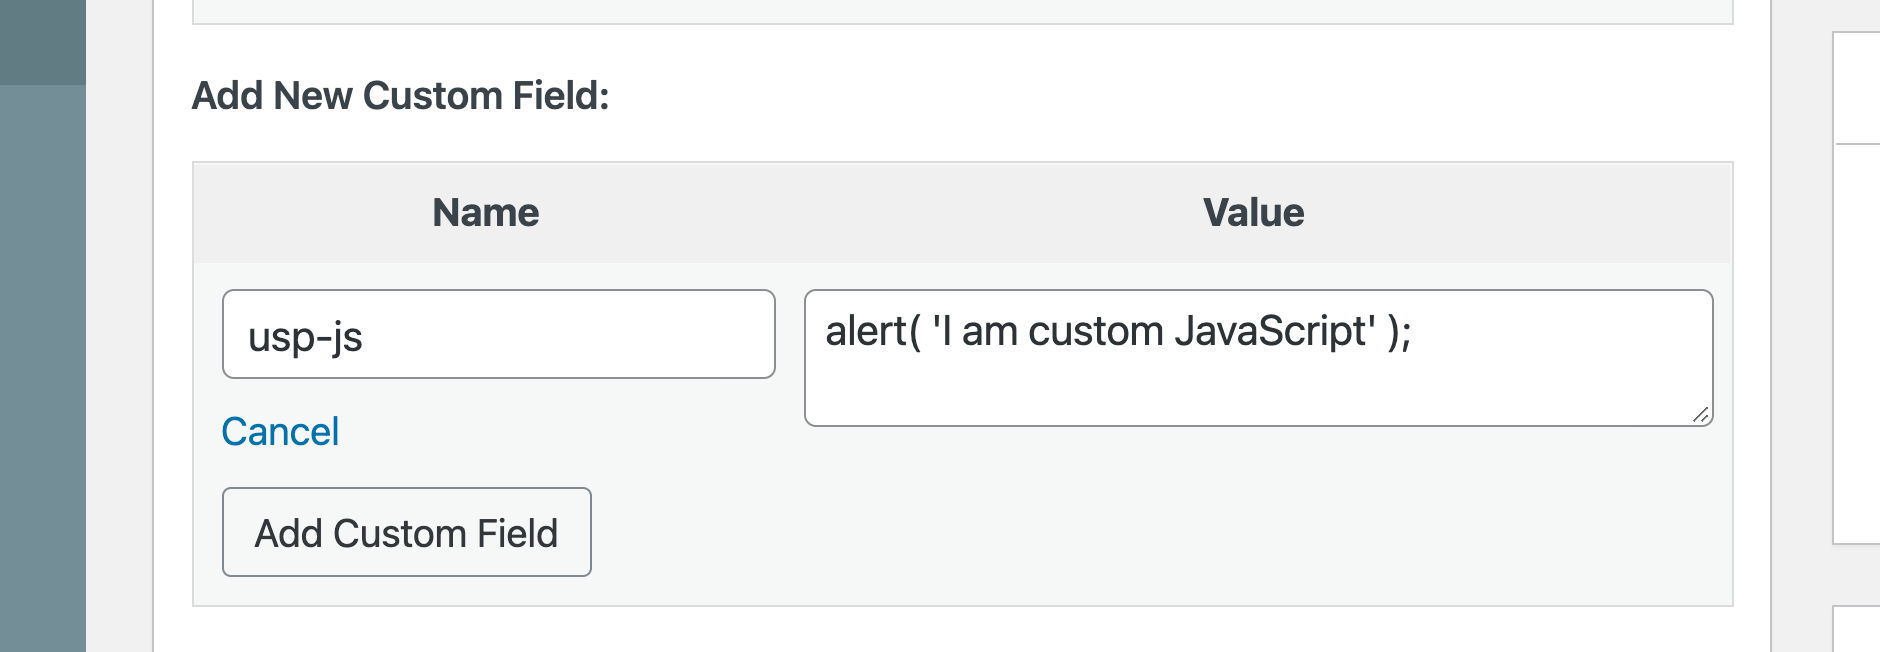 USP Pro - Custom JavaScript